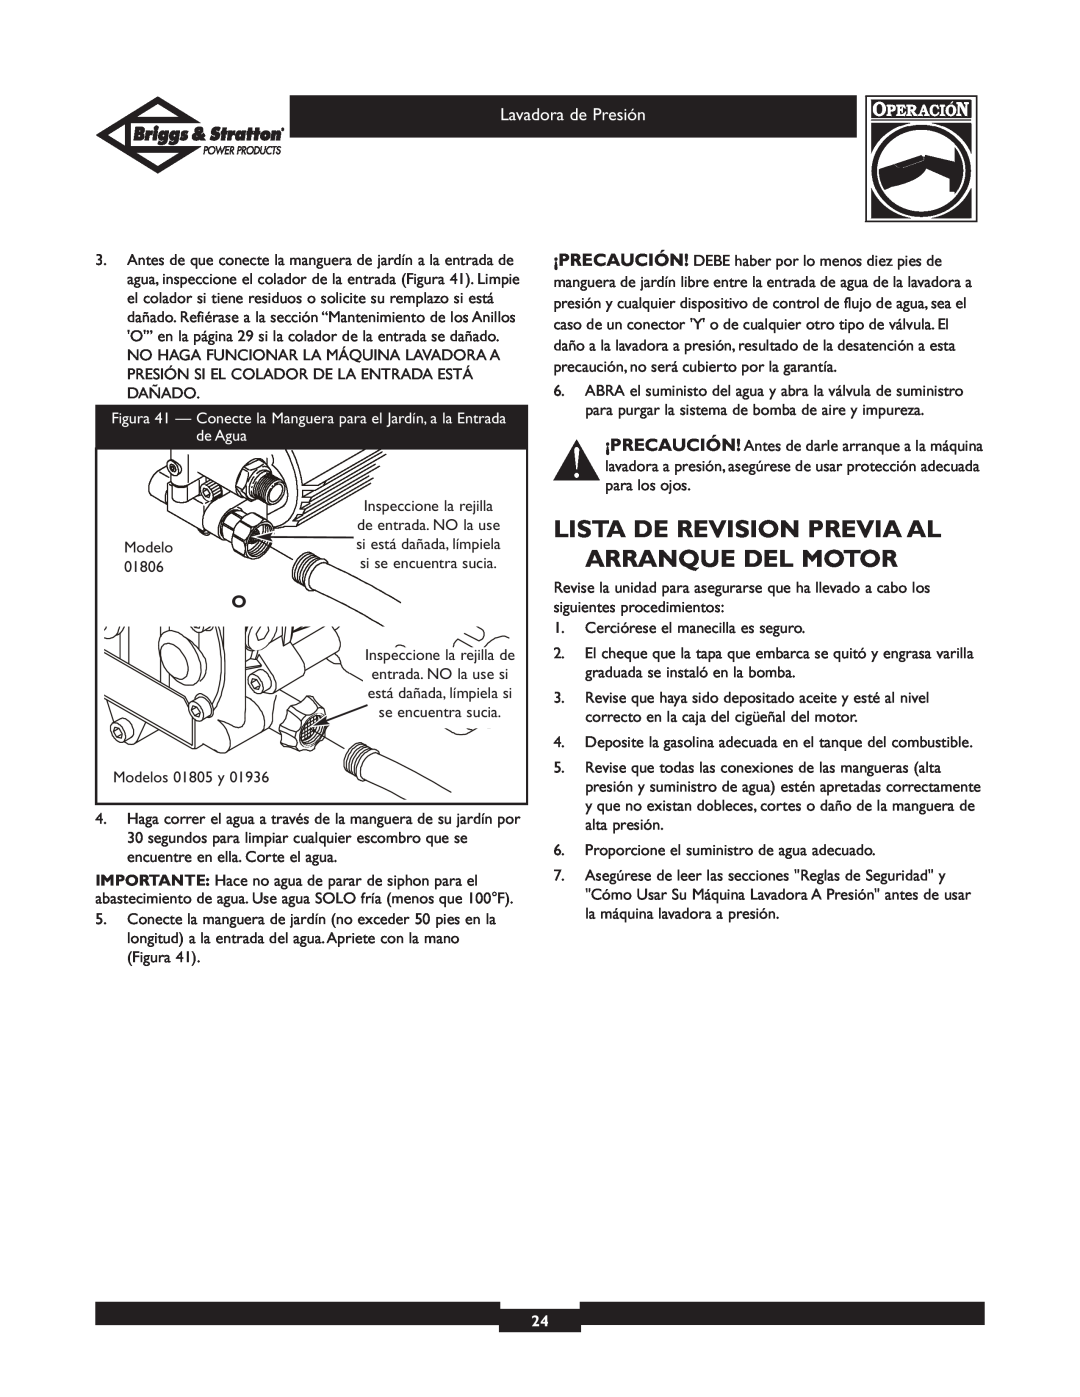 Briggs & Stratton 01936 owner manual Lista De Revision Previa Al Arranque Del Motor 